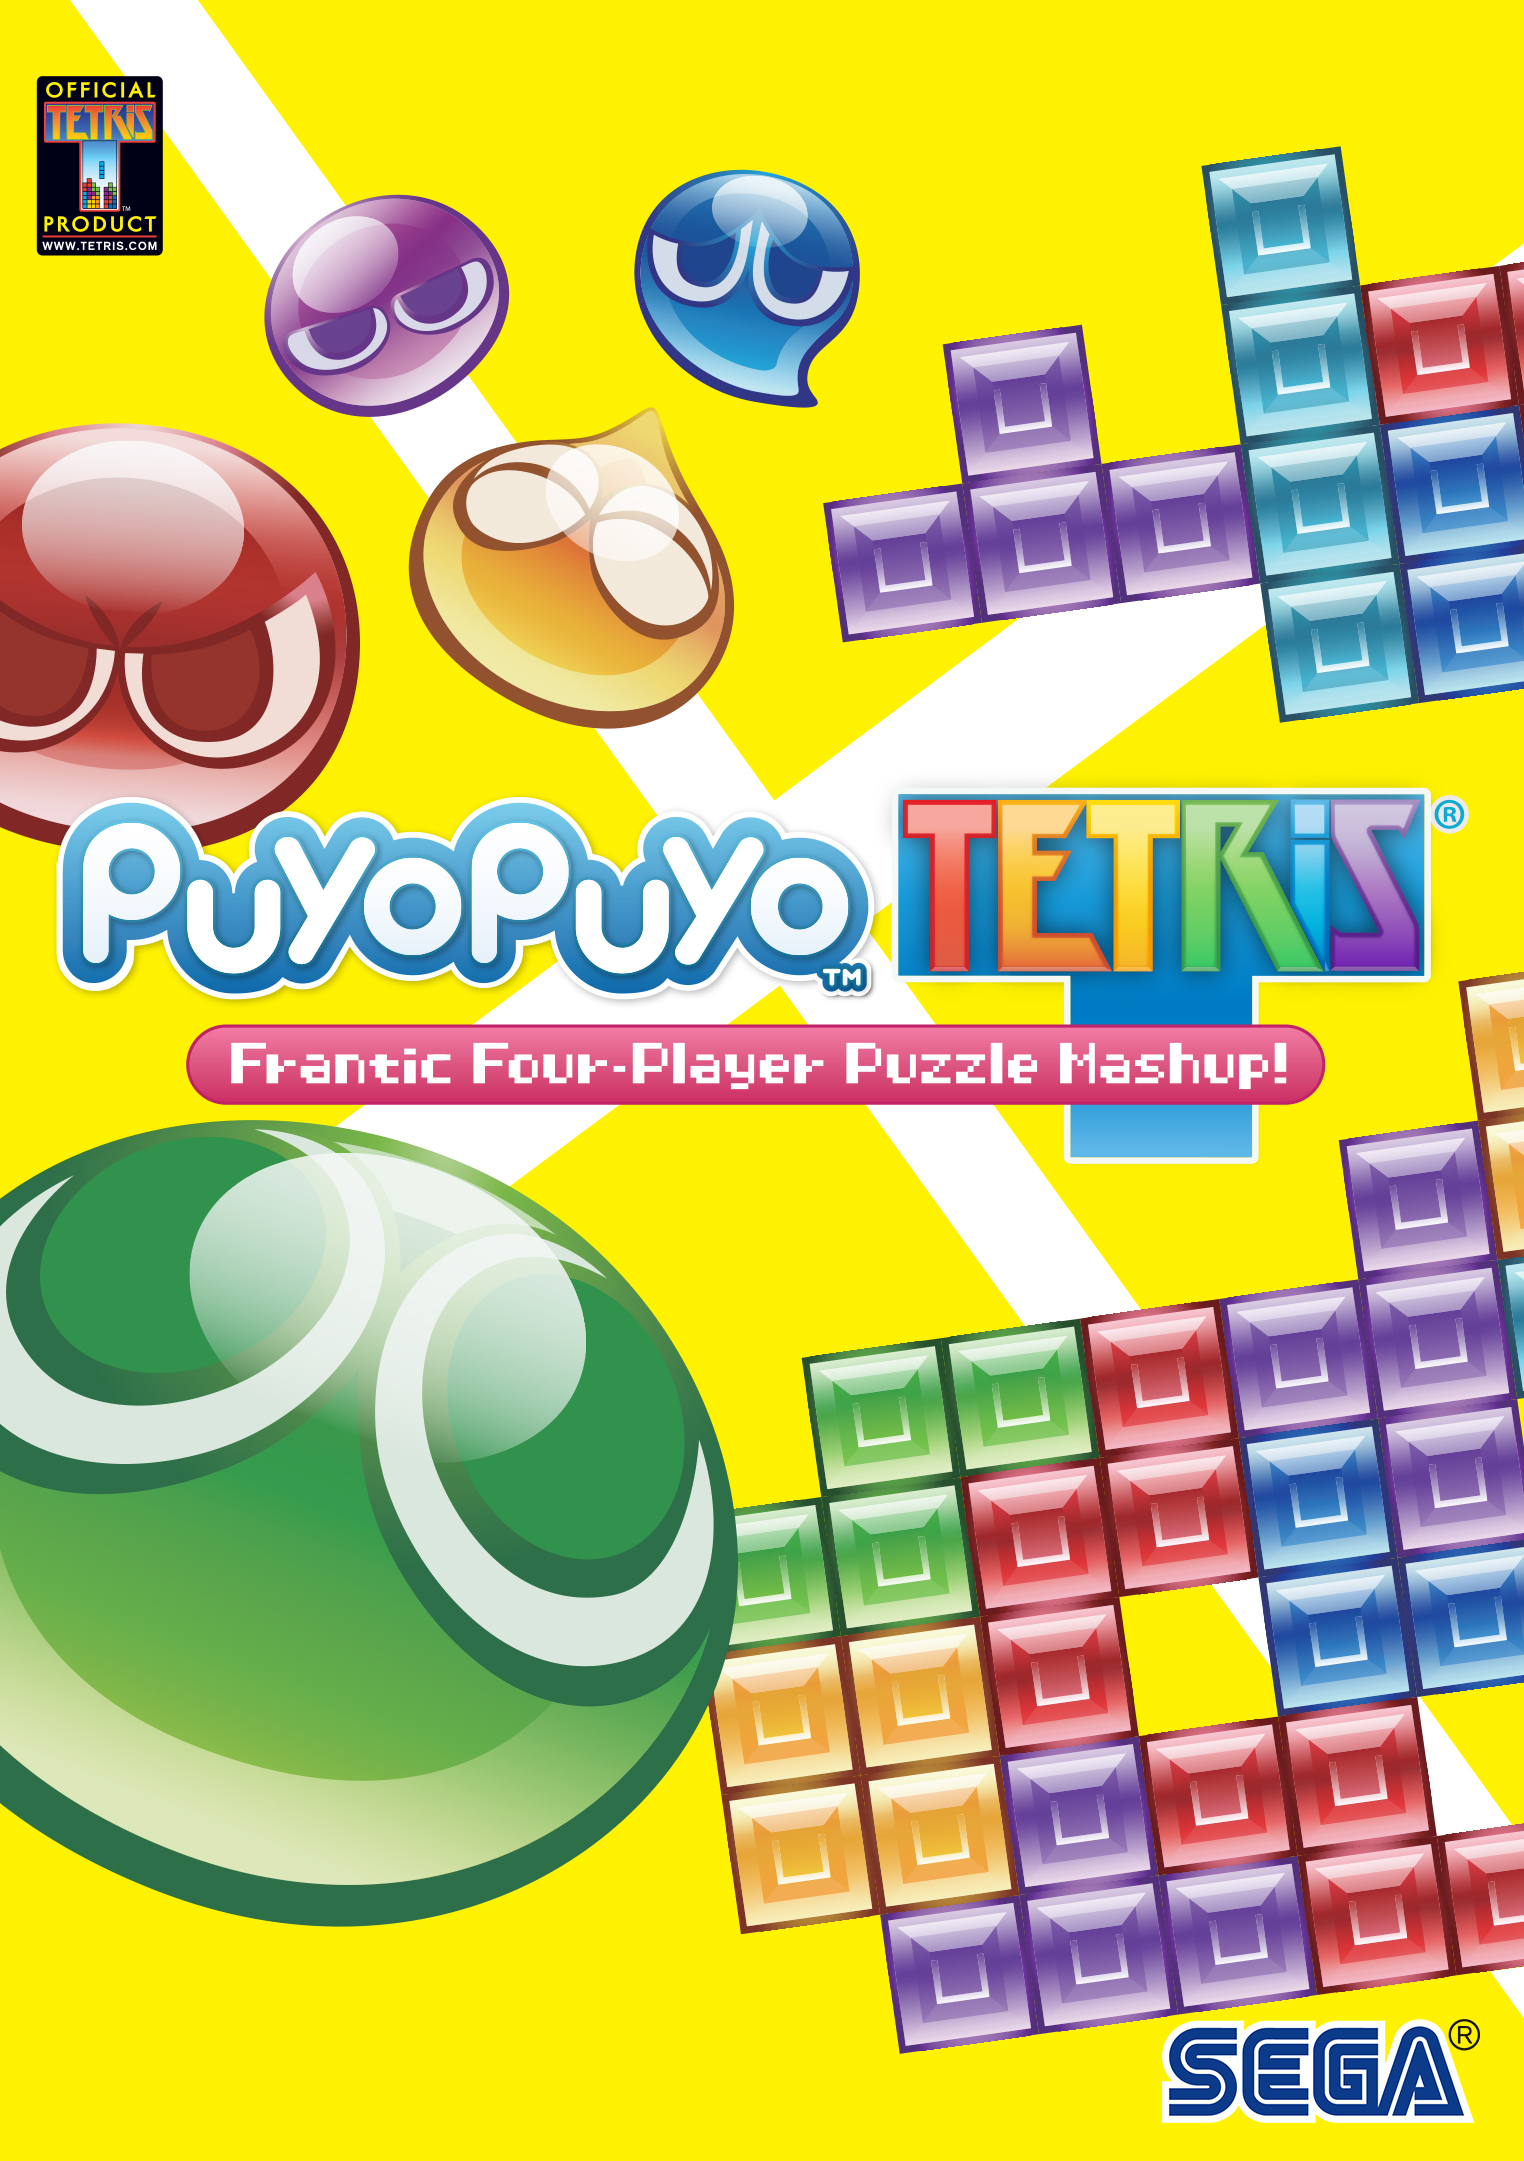 Puyo Puyo™Tetris®